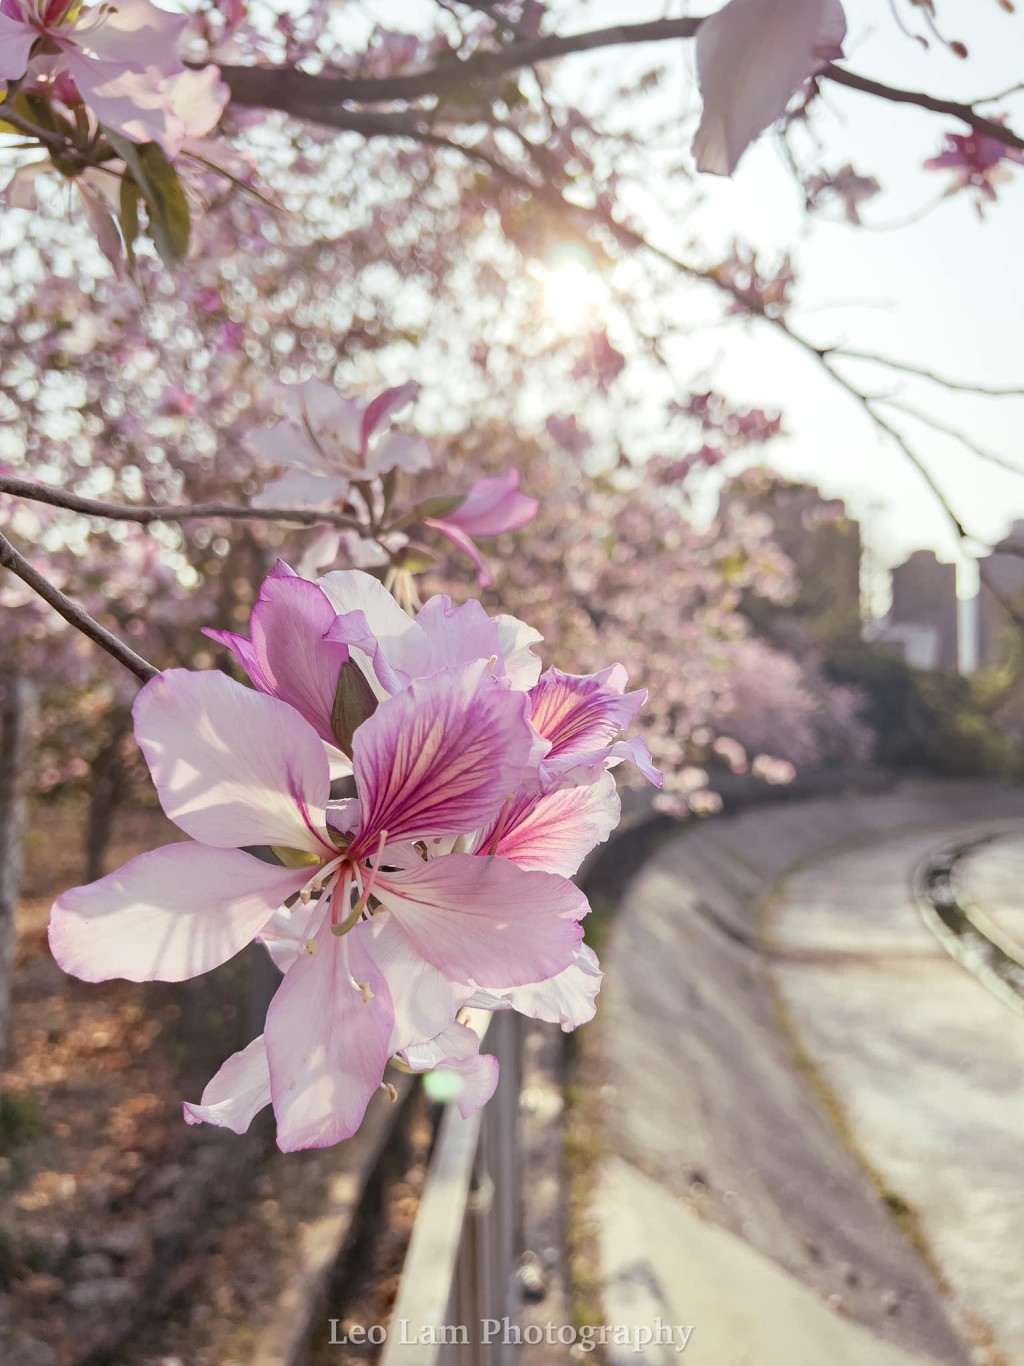 網民指「香港的宮粉不輸日本的櫻花」。圖片授權Leo Lam